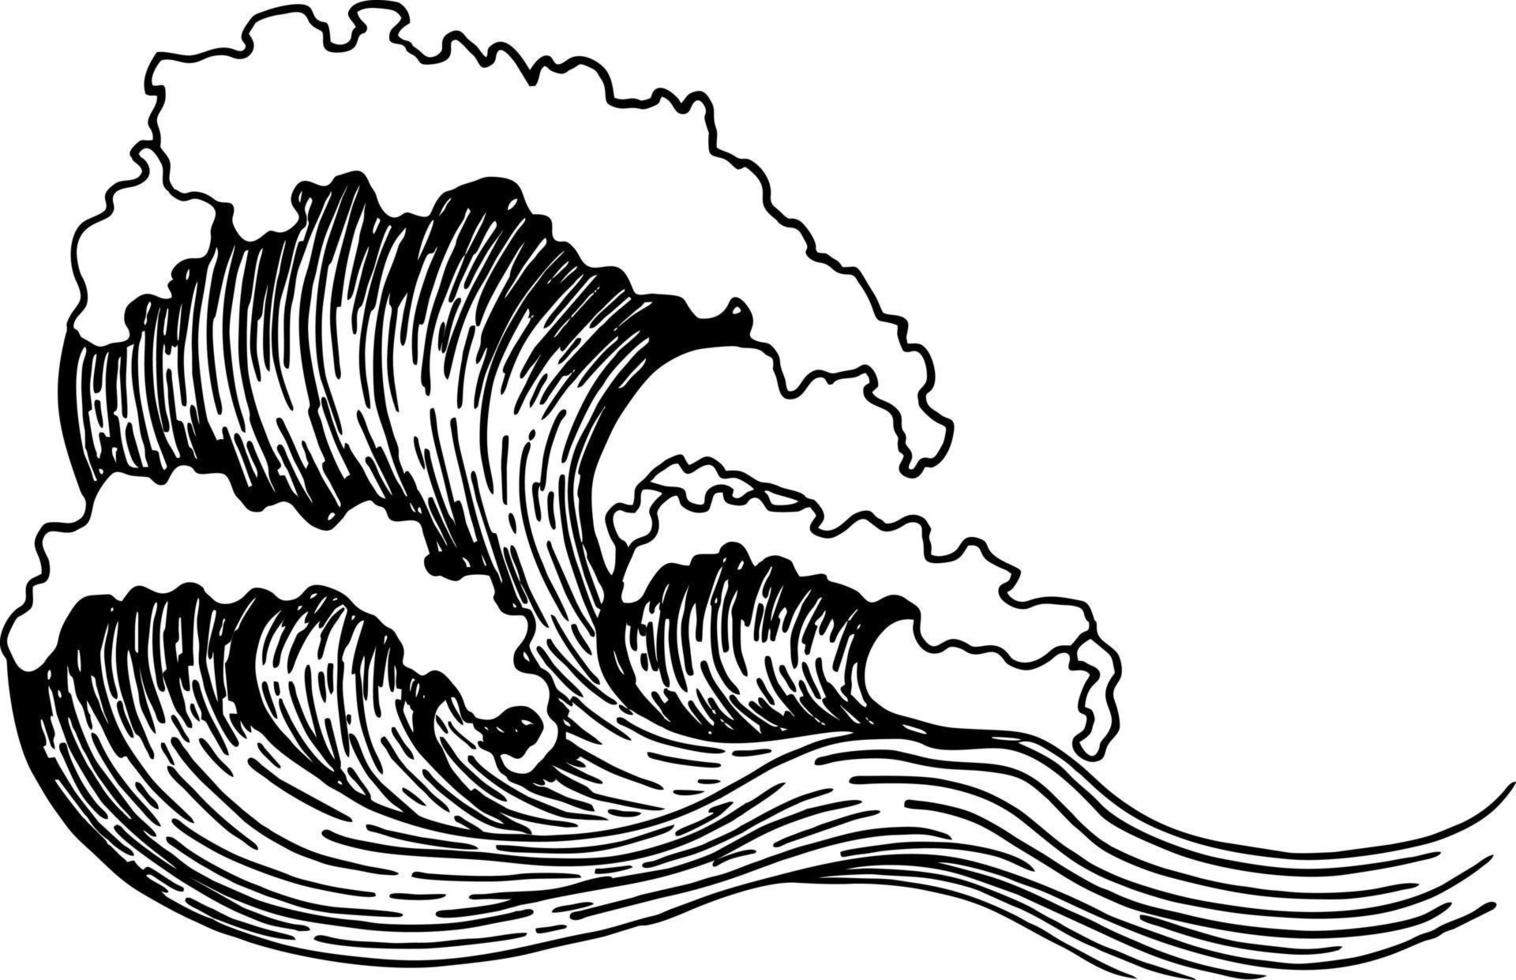 Skizze der Meereswellen. Umriss der Meereswelle. handgezeichnete Skizze. hand gezeichnete gekritzelillustration des ozeanwellensatzes vektor